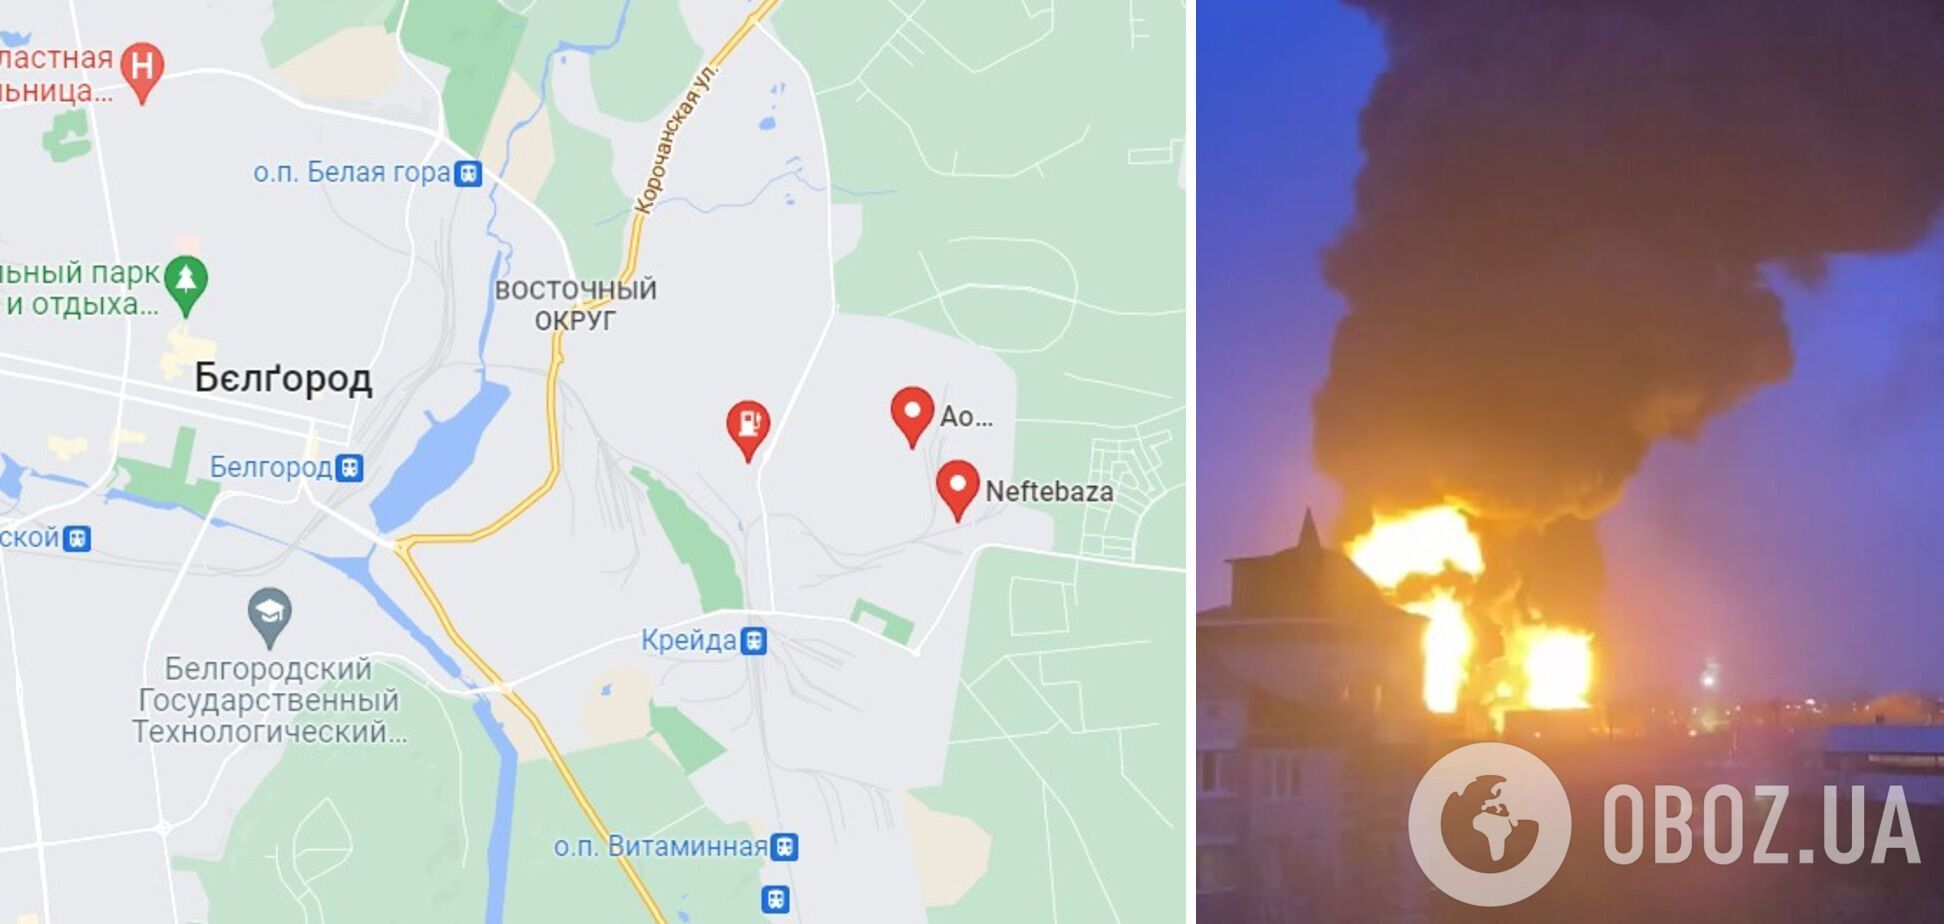 В Белгороде вспыхнул мощный пожар на нефтебазе, поднялся столб огня и дыма. Фото и видео